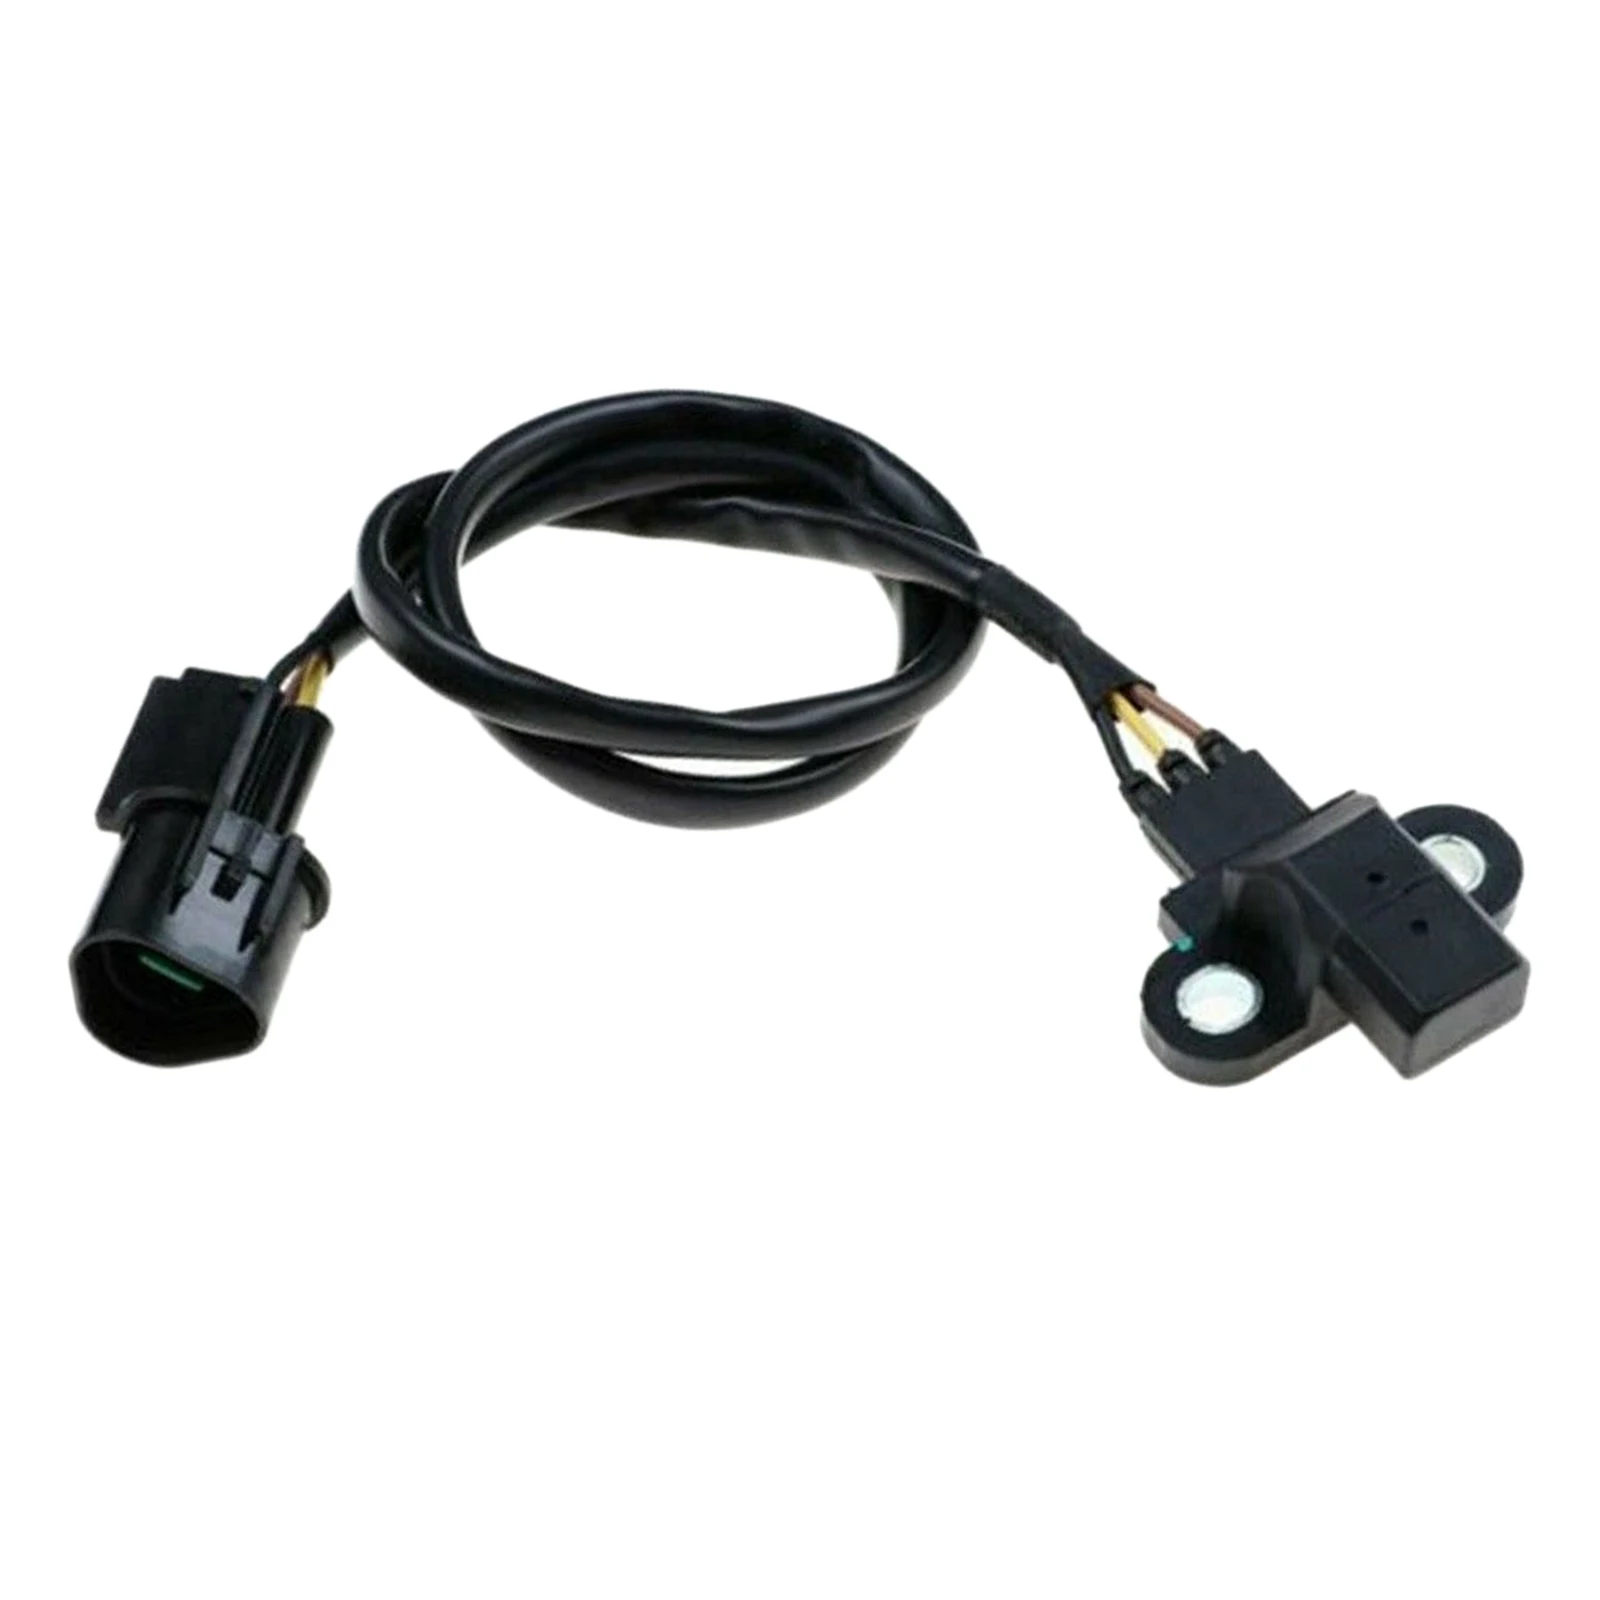 MR985145 Accessories Automotive Durable High Performance  Crank Position Sensor, for   Endeavor